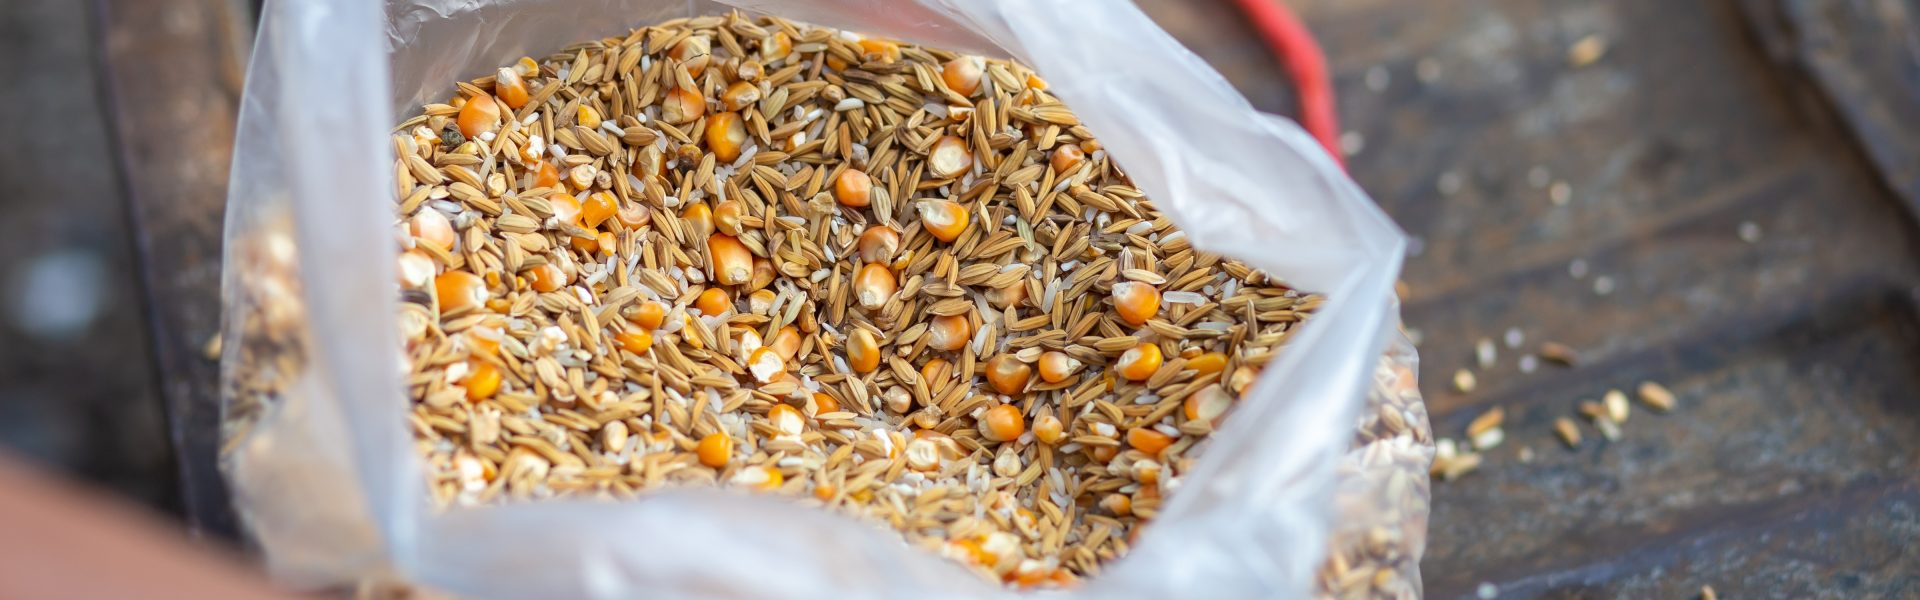 Thức ăn lúa và ngô đựng trong túi nhựa trong để dùng làm thức ăn chăn nuôi